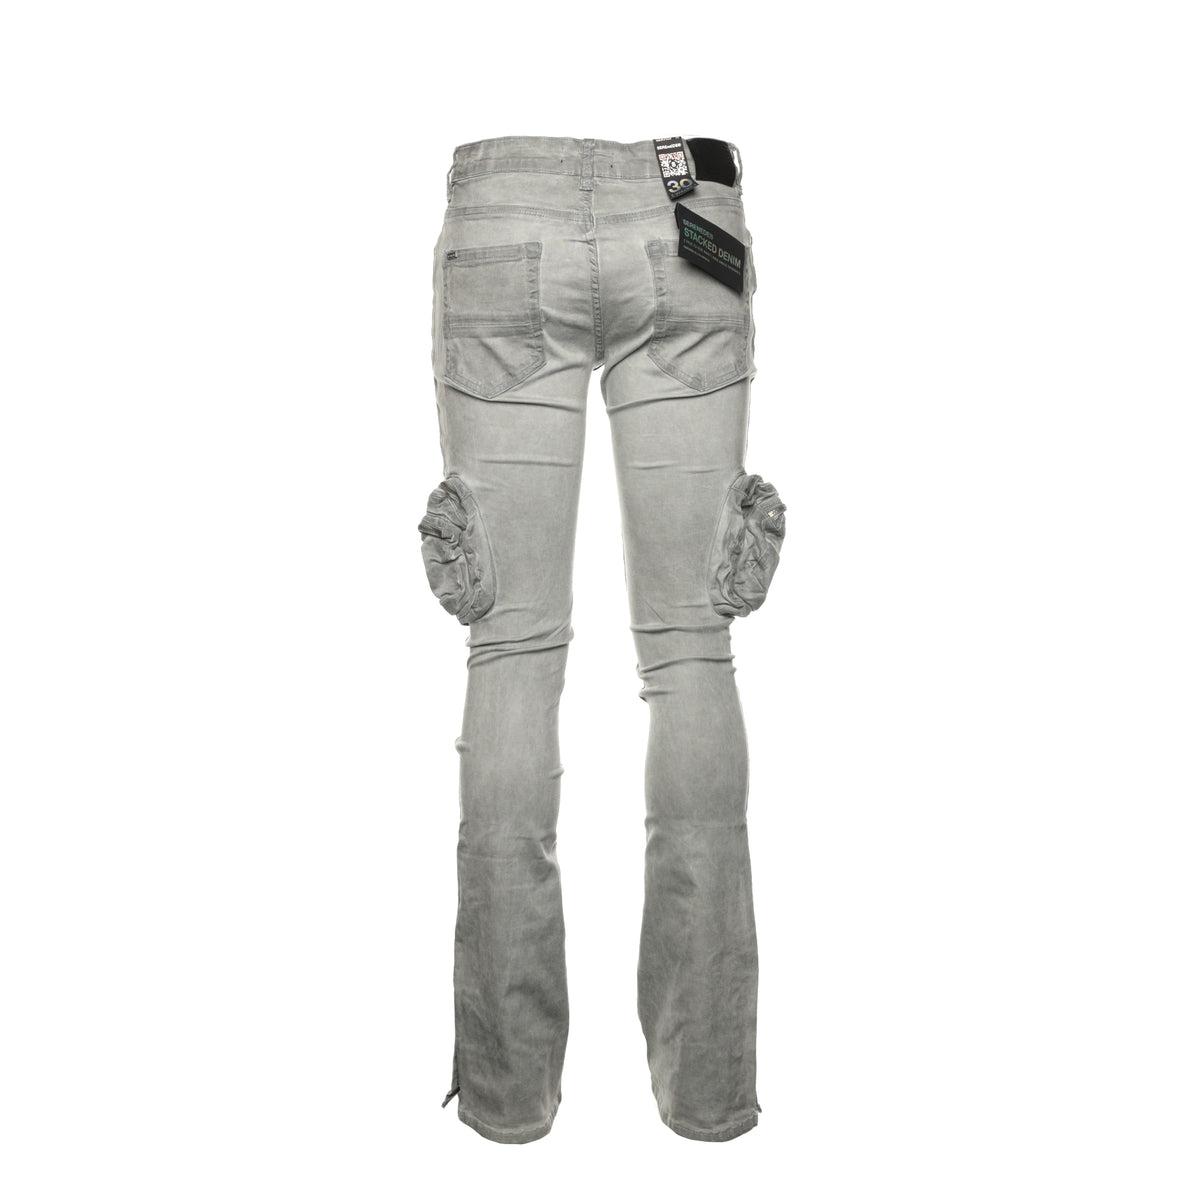 Serenede "Salem" Stacked Men's Jeans - SIZE Boutique